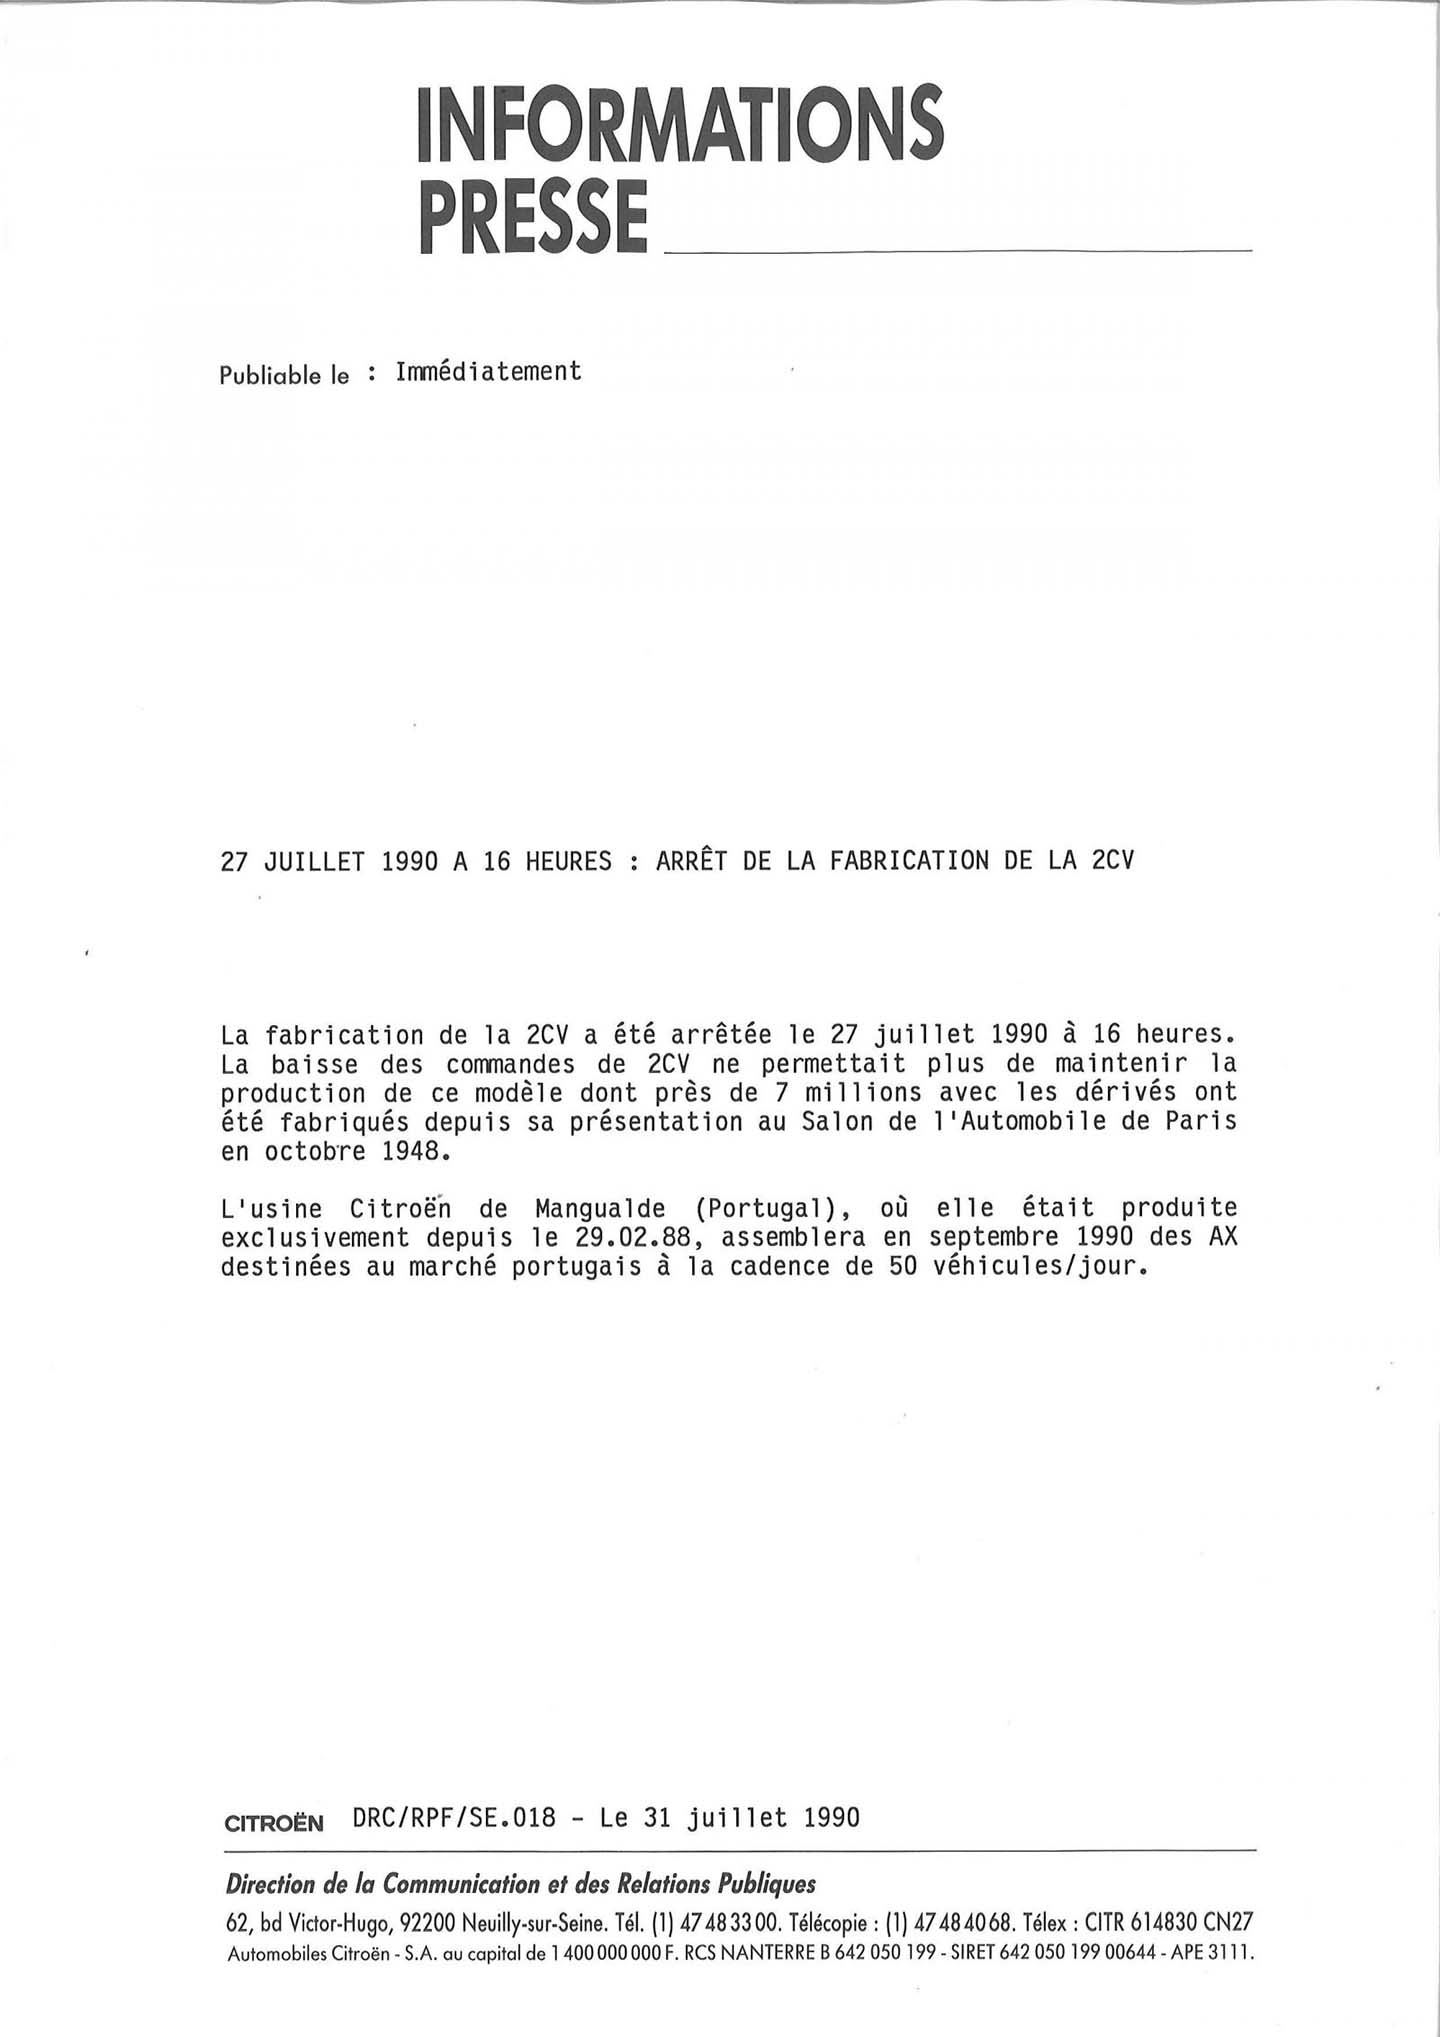 documento ufficiale che attesta il termine della produzione della Citroën 2CV